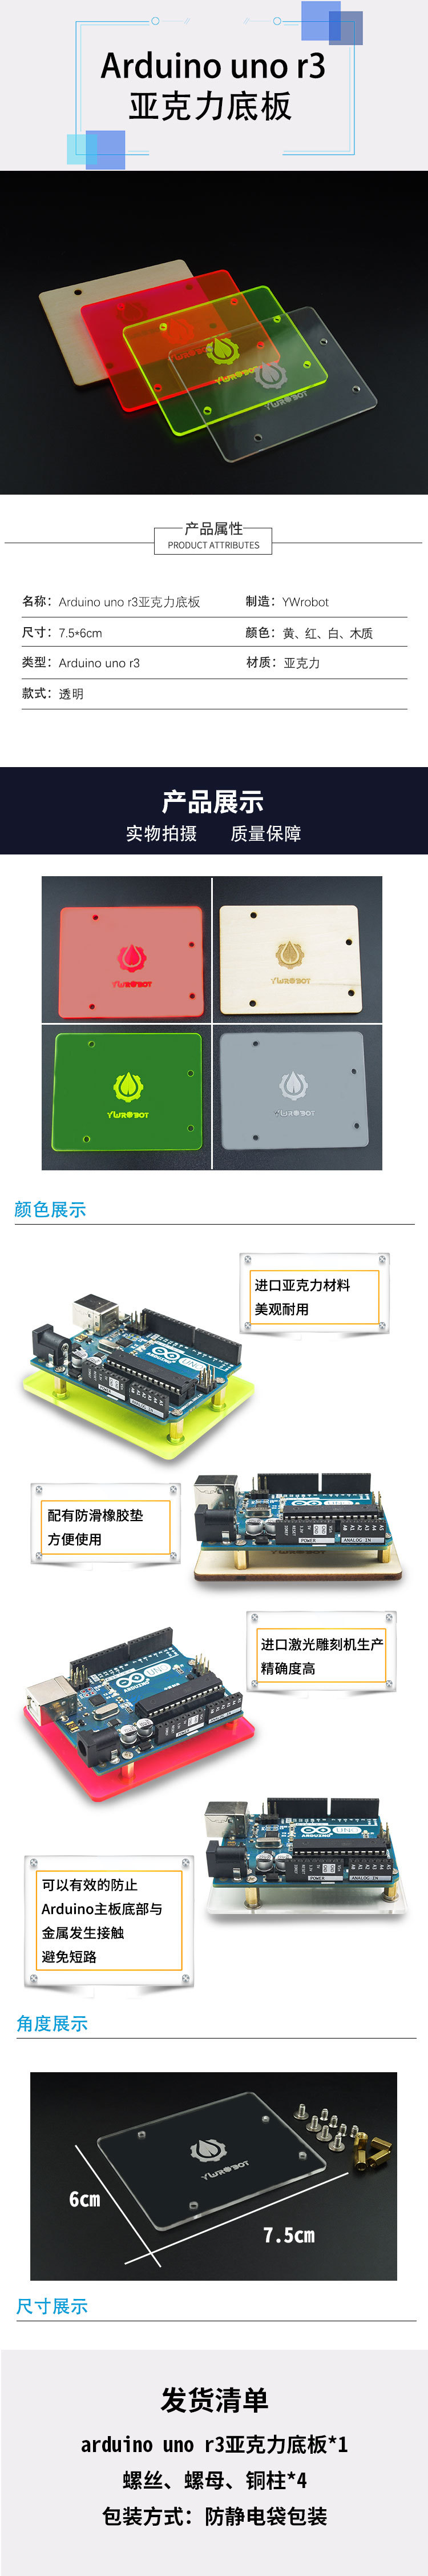 淘宝美工白苗Arduino uno开发板保护壳 彩色亚克力外壳底座作品